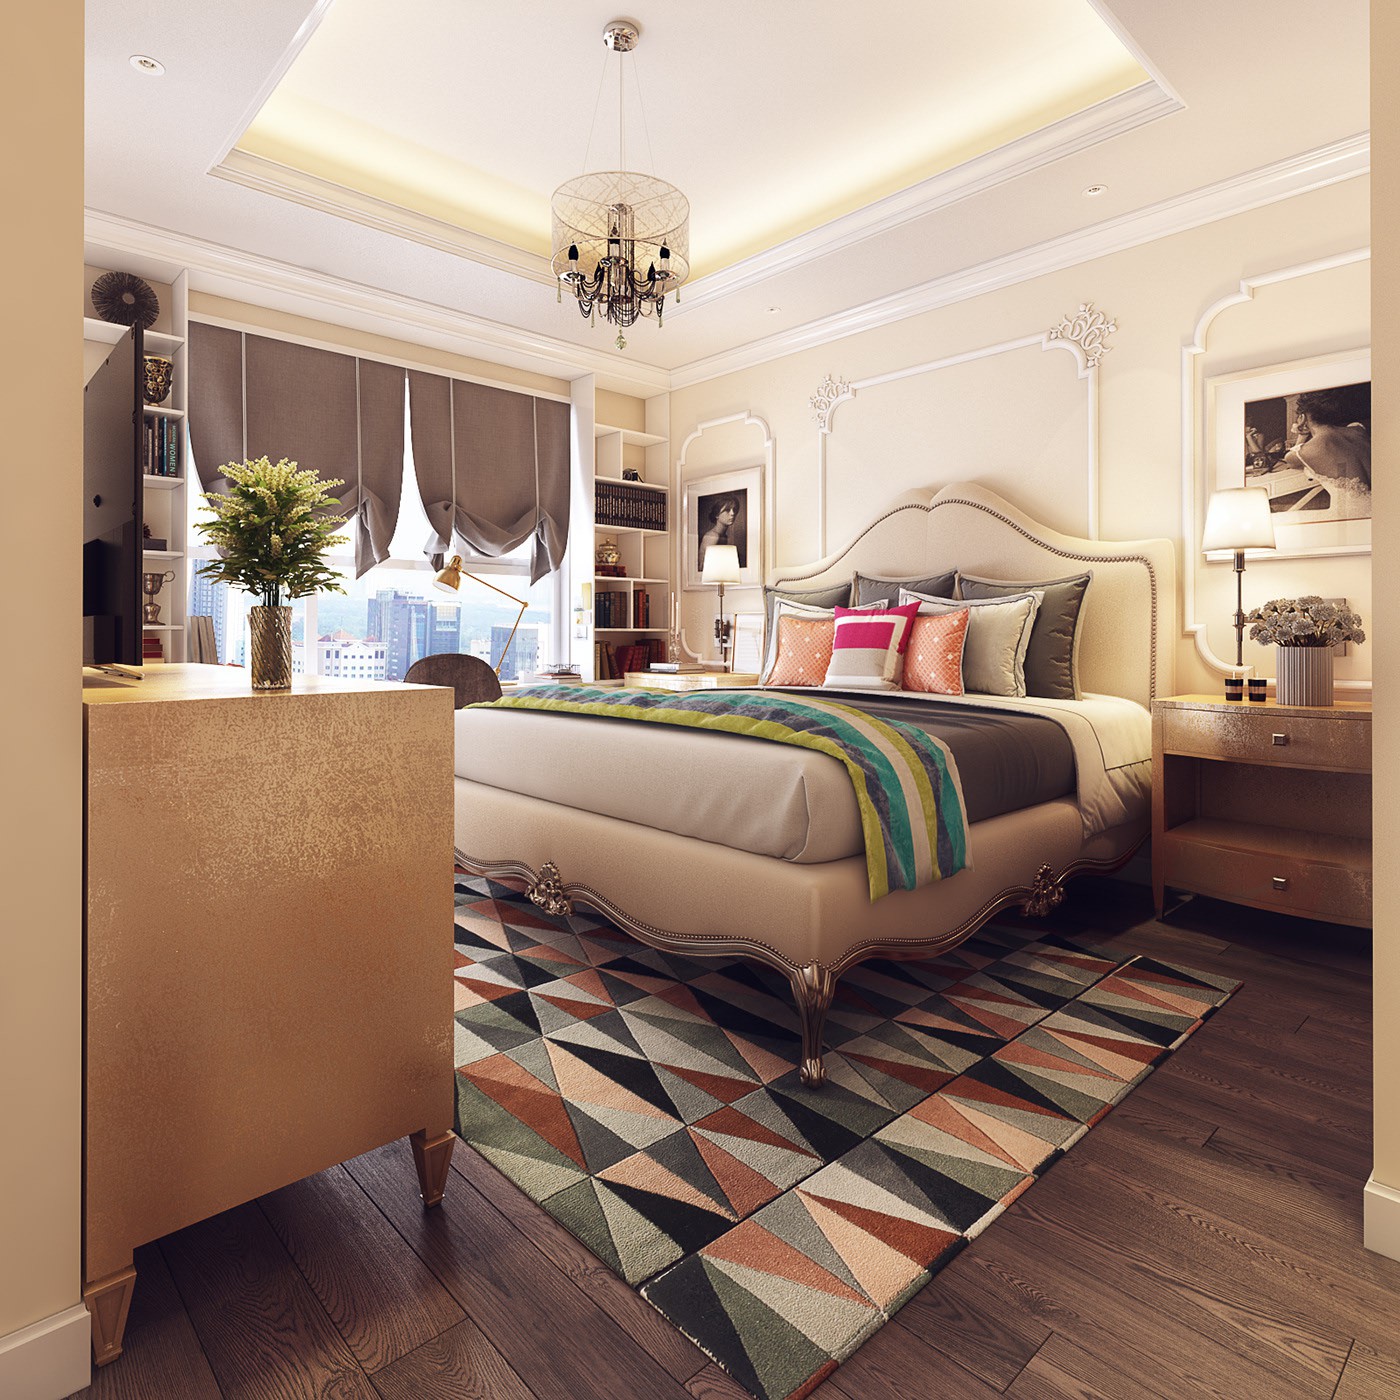 Hình ảnh phòng ngủ với giường cổ điển màu be đặt trên thảm trải màu sắc, đối diện giường là tủ kệ tivi, bàn trang điểm